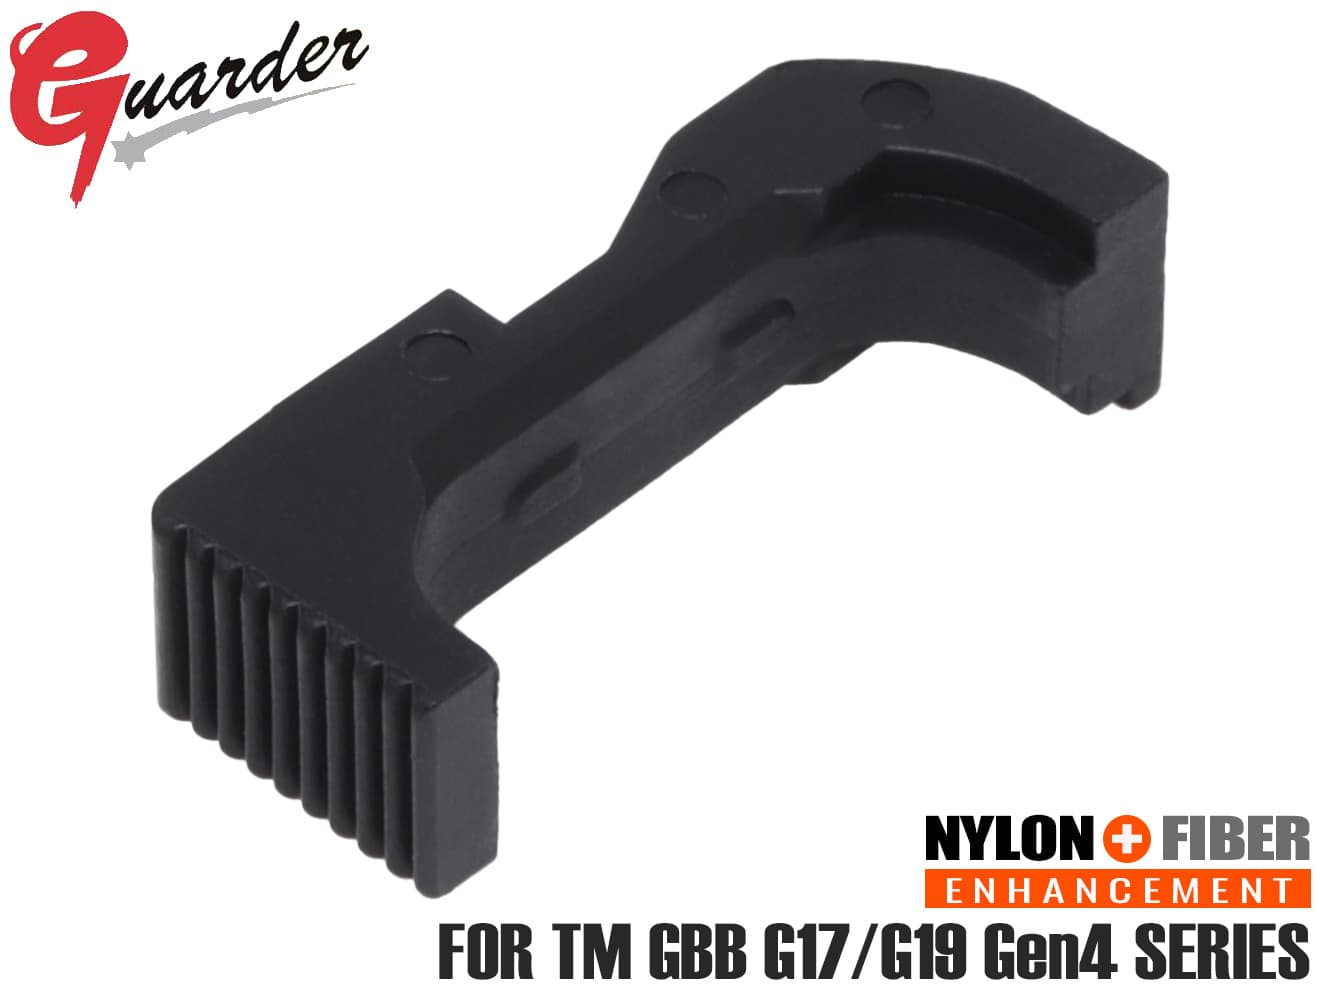 GLK-206(BK)■GUARDER スタンダード マガジンリリース for マルイ G17/G19 Gen4◆ガーダー GLOCK グロック GBB 実銃素材 マットな質感 リアル感/雰囲気アップ